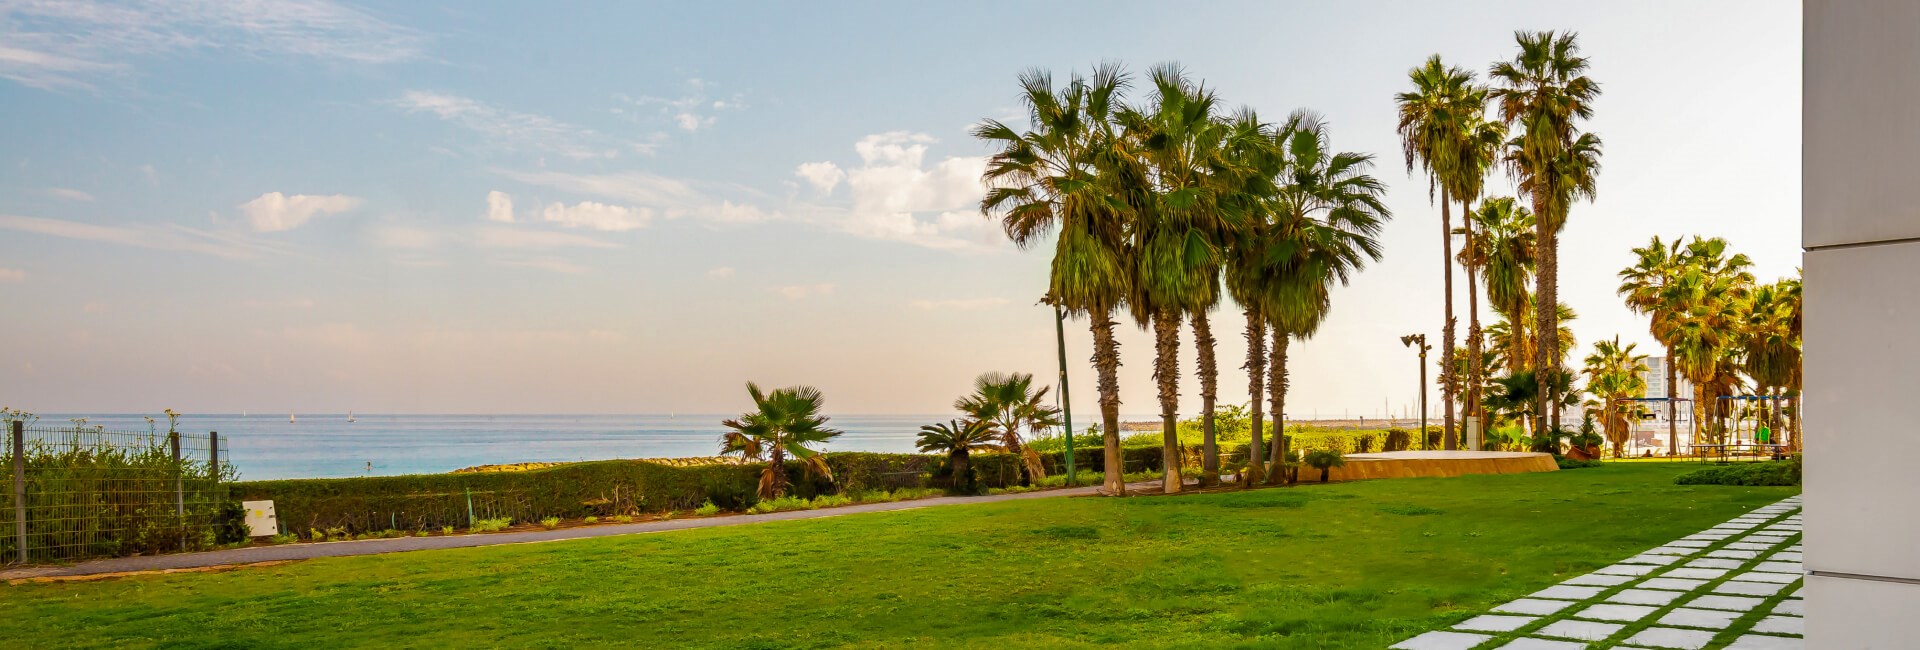  מלון דניאל הרצליה - מדשאה נוף לים